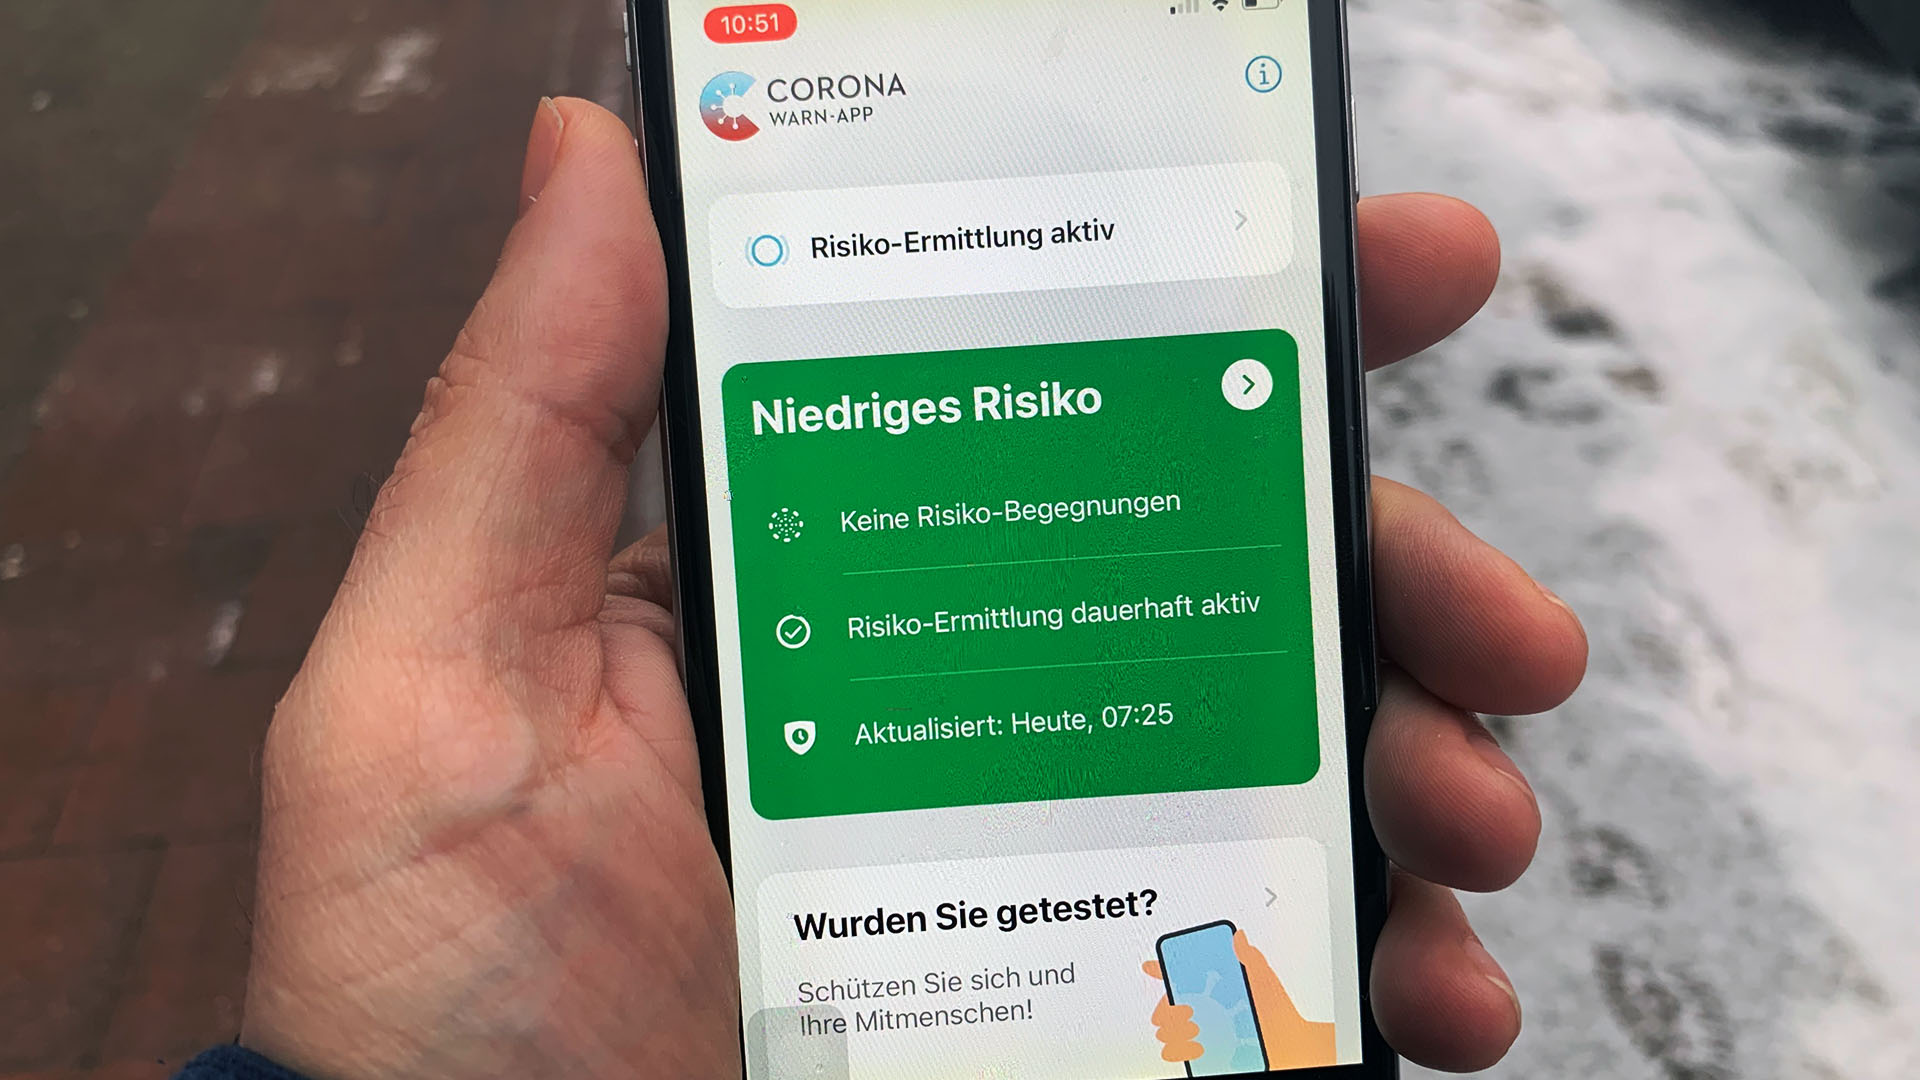 Corona-Warn-App auf einem iPhone 6 